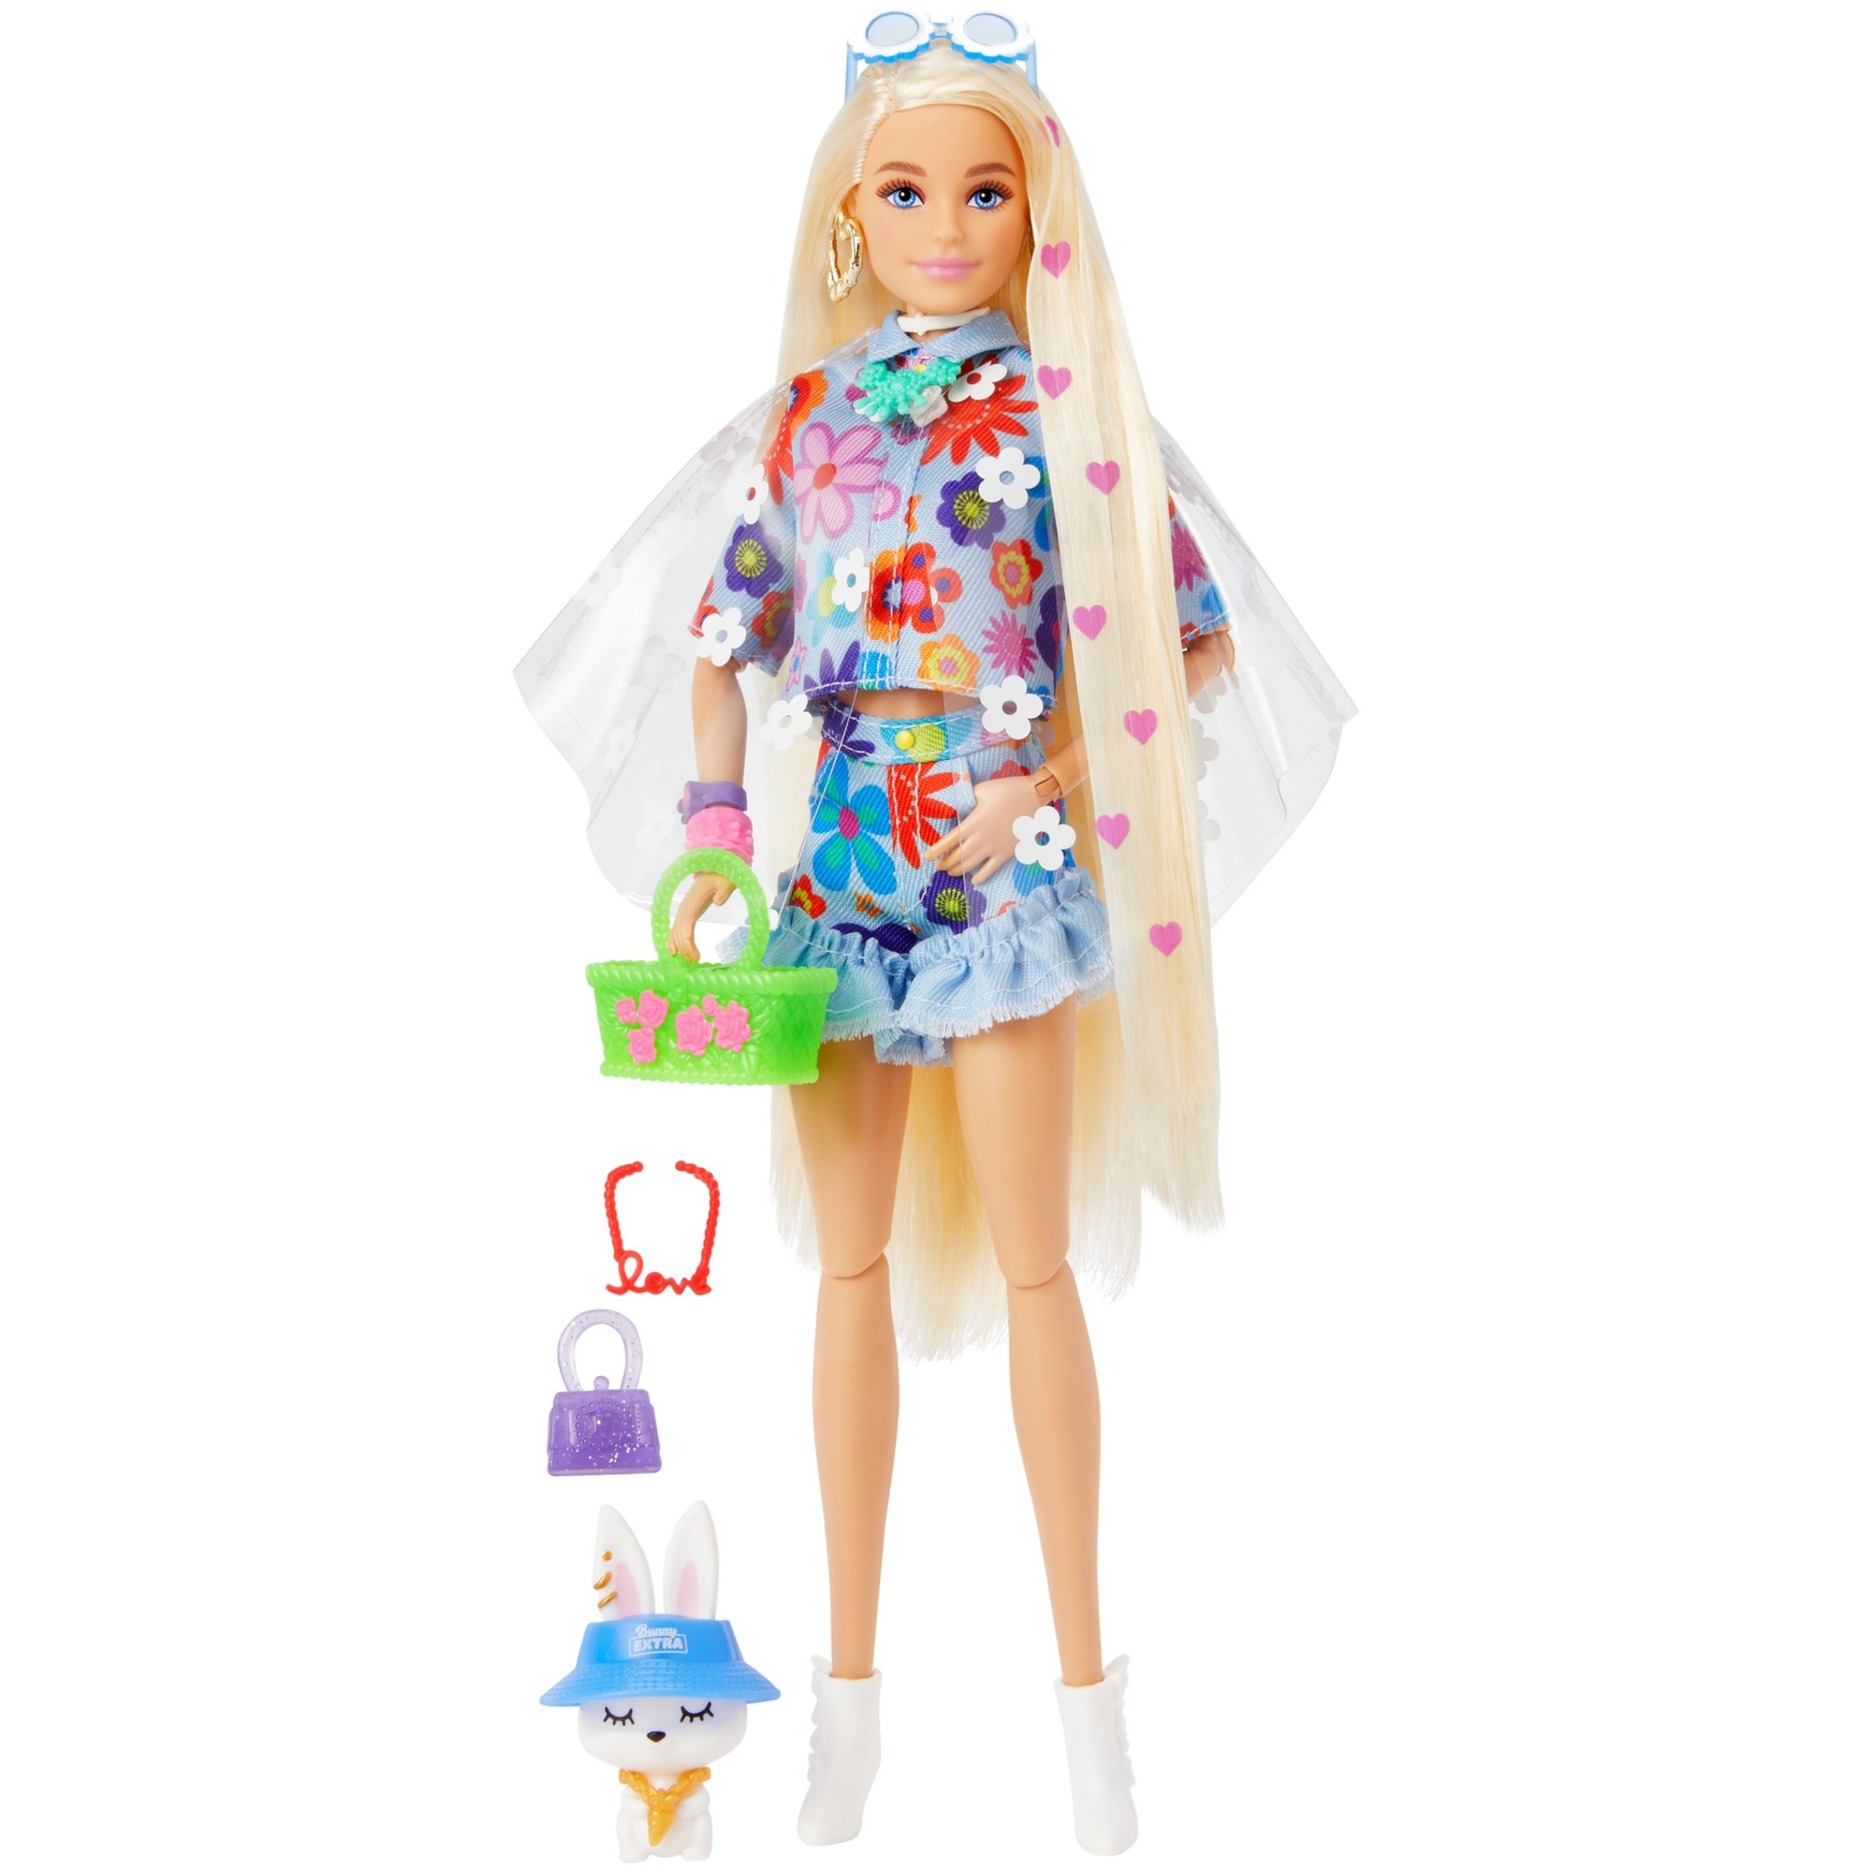 Image of Alternate - Barbie Extra Puppe Flower Power online einkaufen bei Alternate